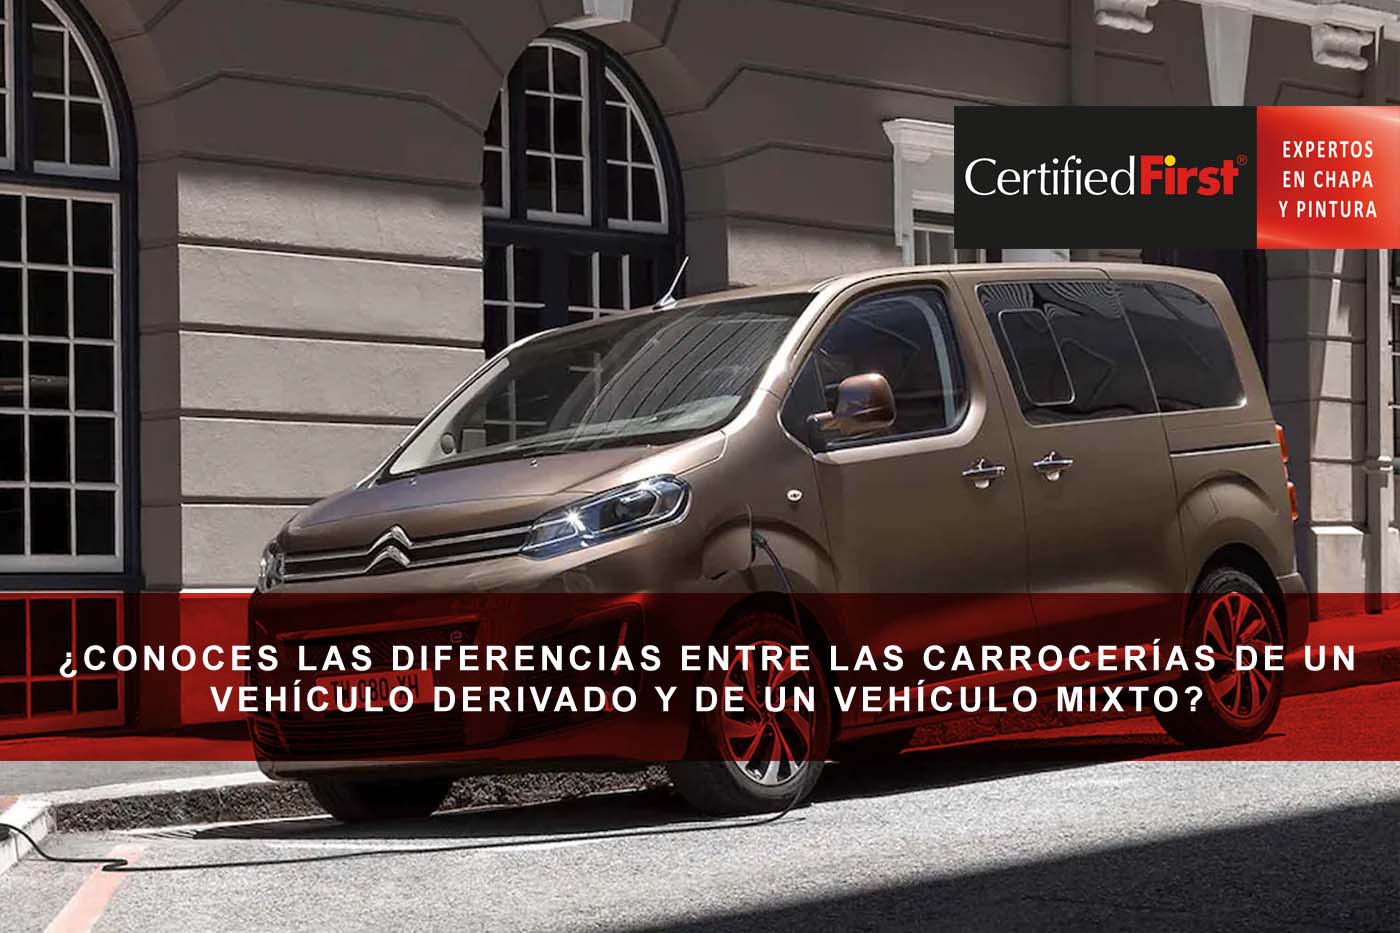 ¿Conoces las diferencias entre las carrocerías de un vehículo derivado de un vehículo mixto?